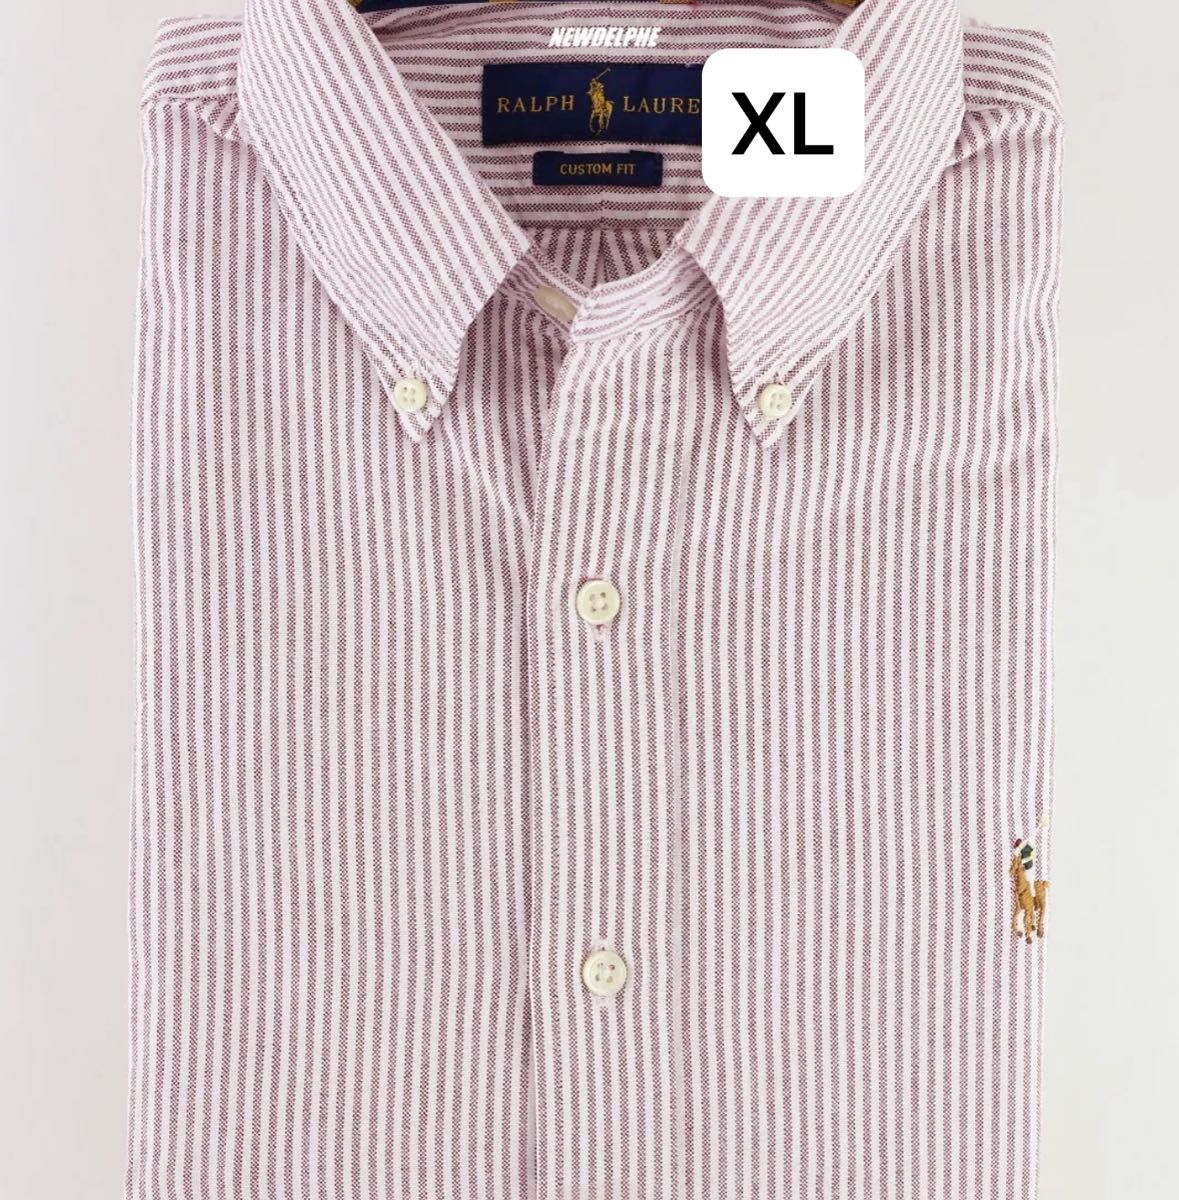 ラルフローレン新品POLO スリムフィット オックスフォード XLサイズ長袖シャツ日本未入荷100%コットンシャツです。